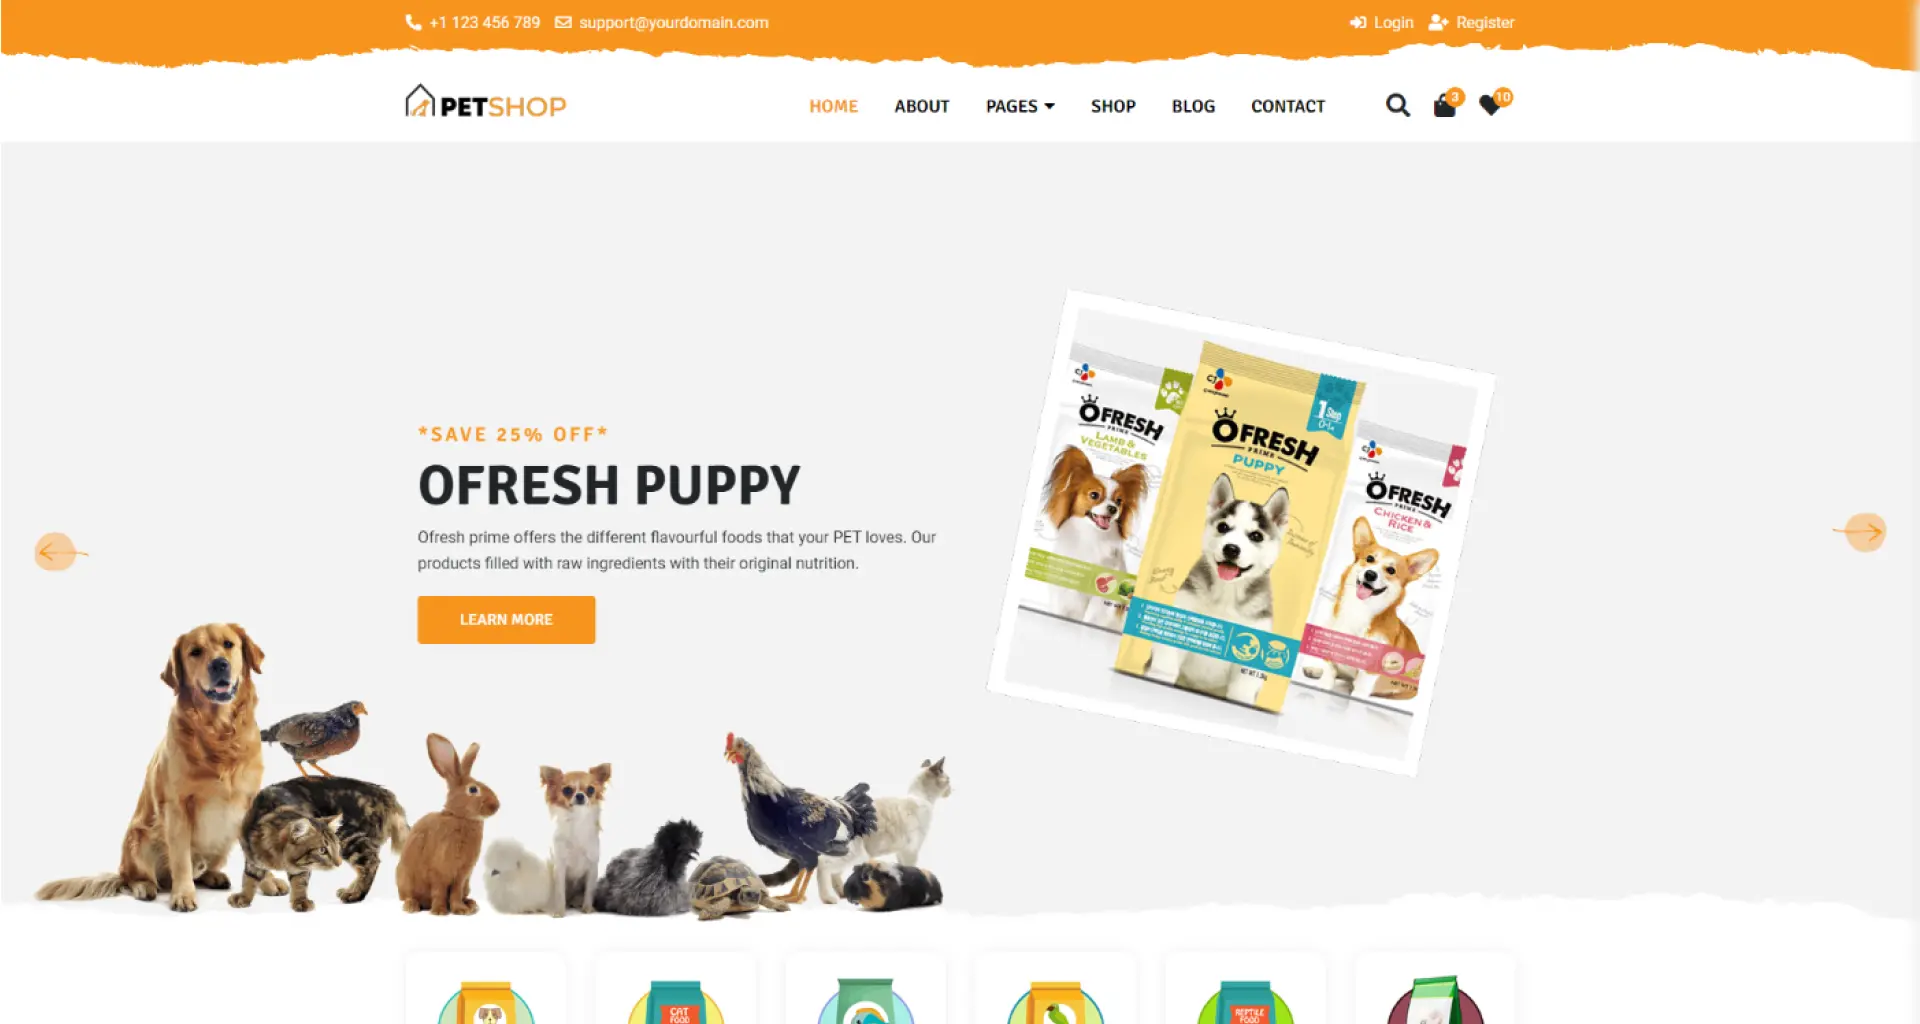 Pet shop main home page